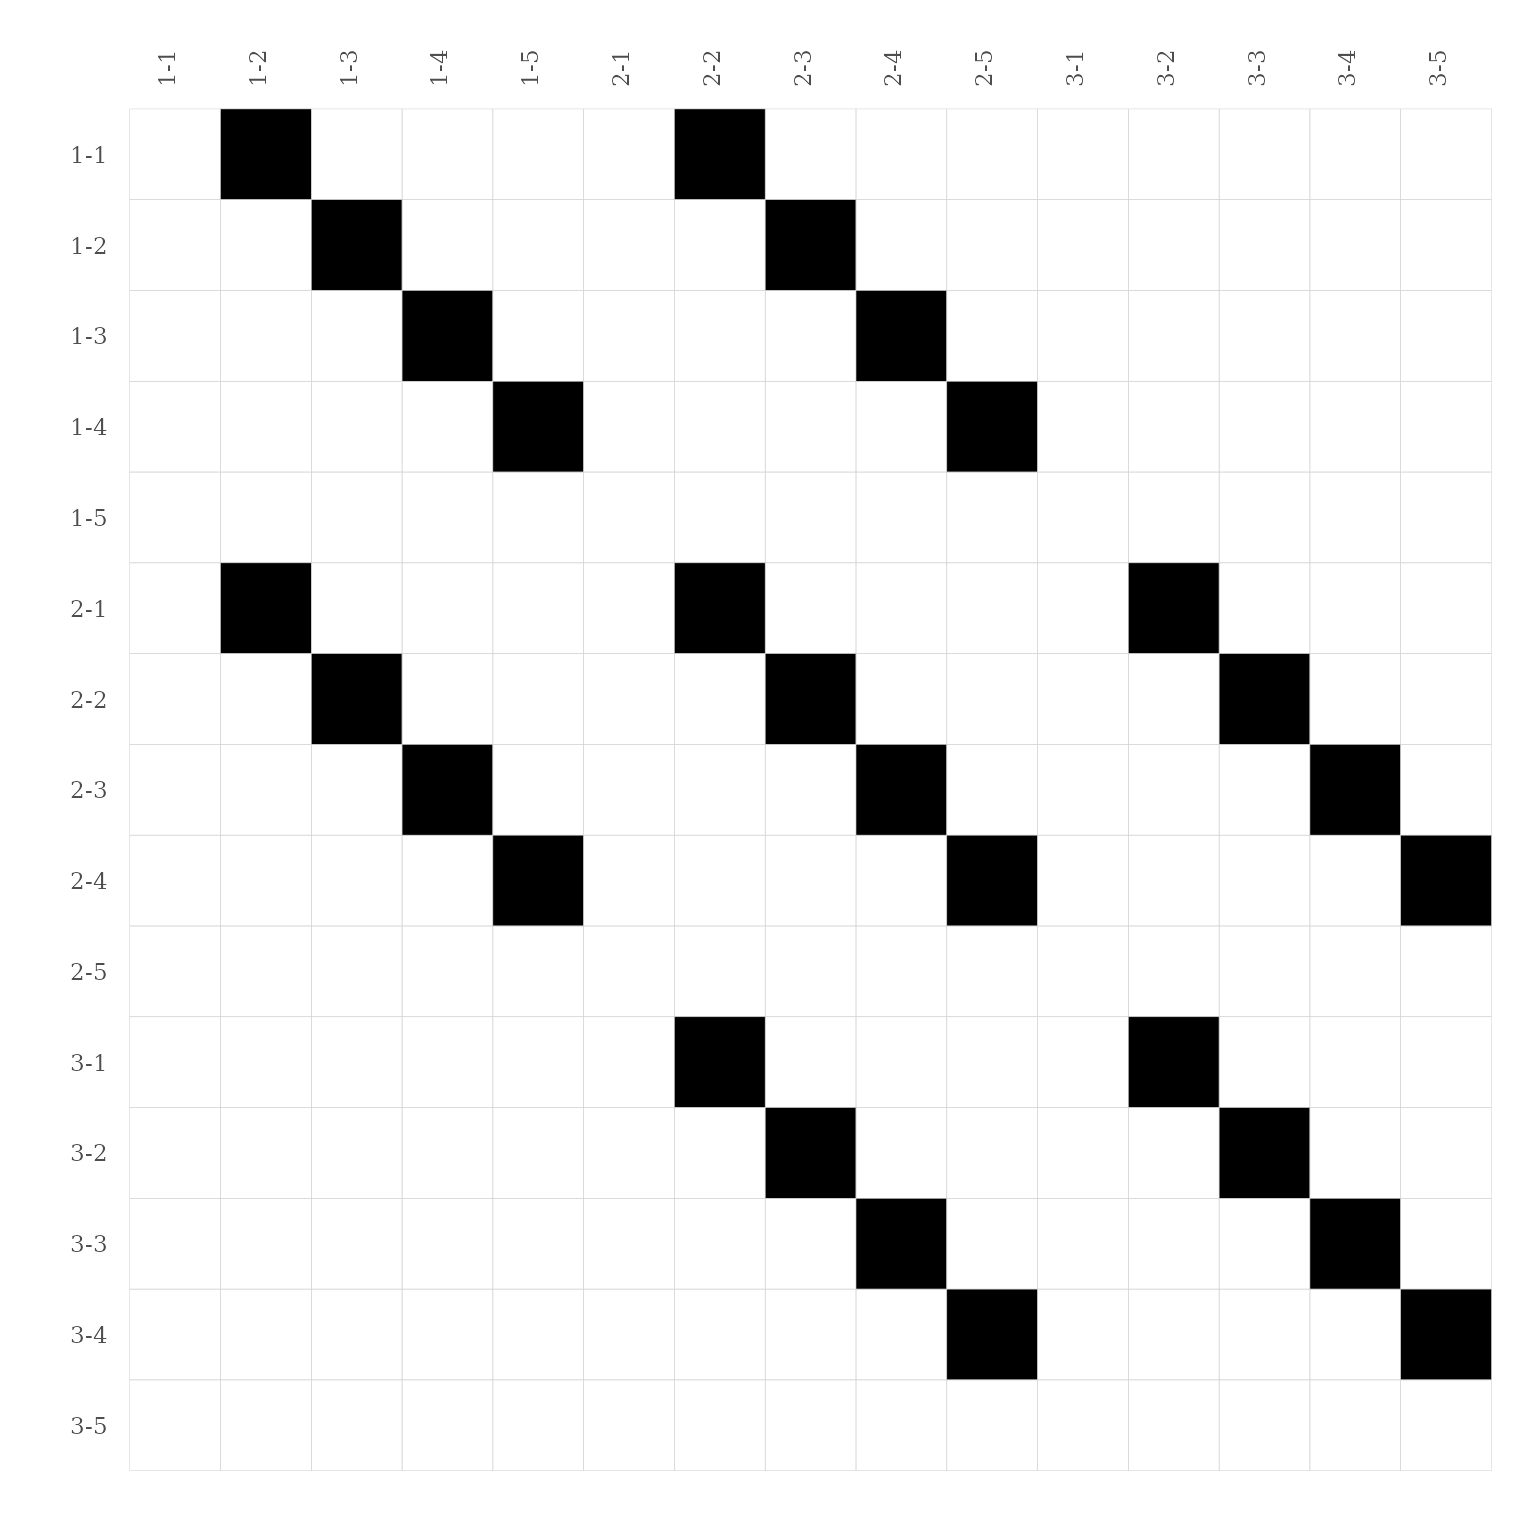 Figure 11. Connectivity matrix